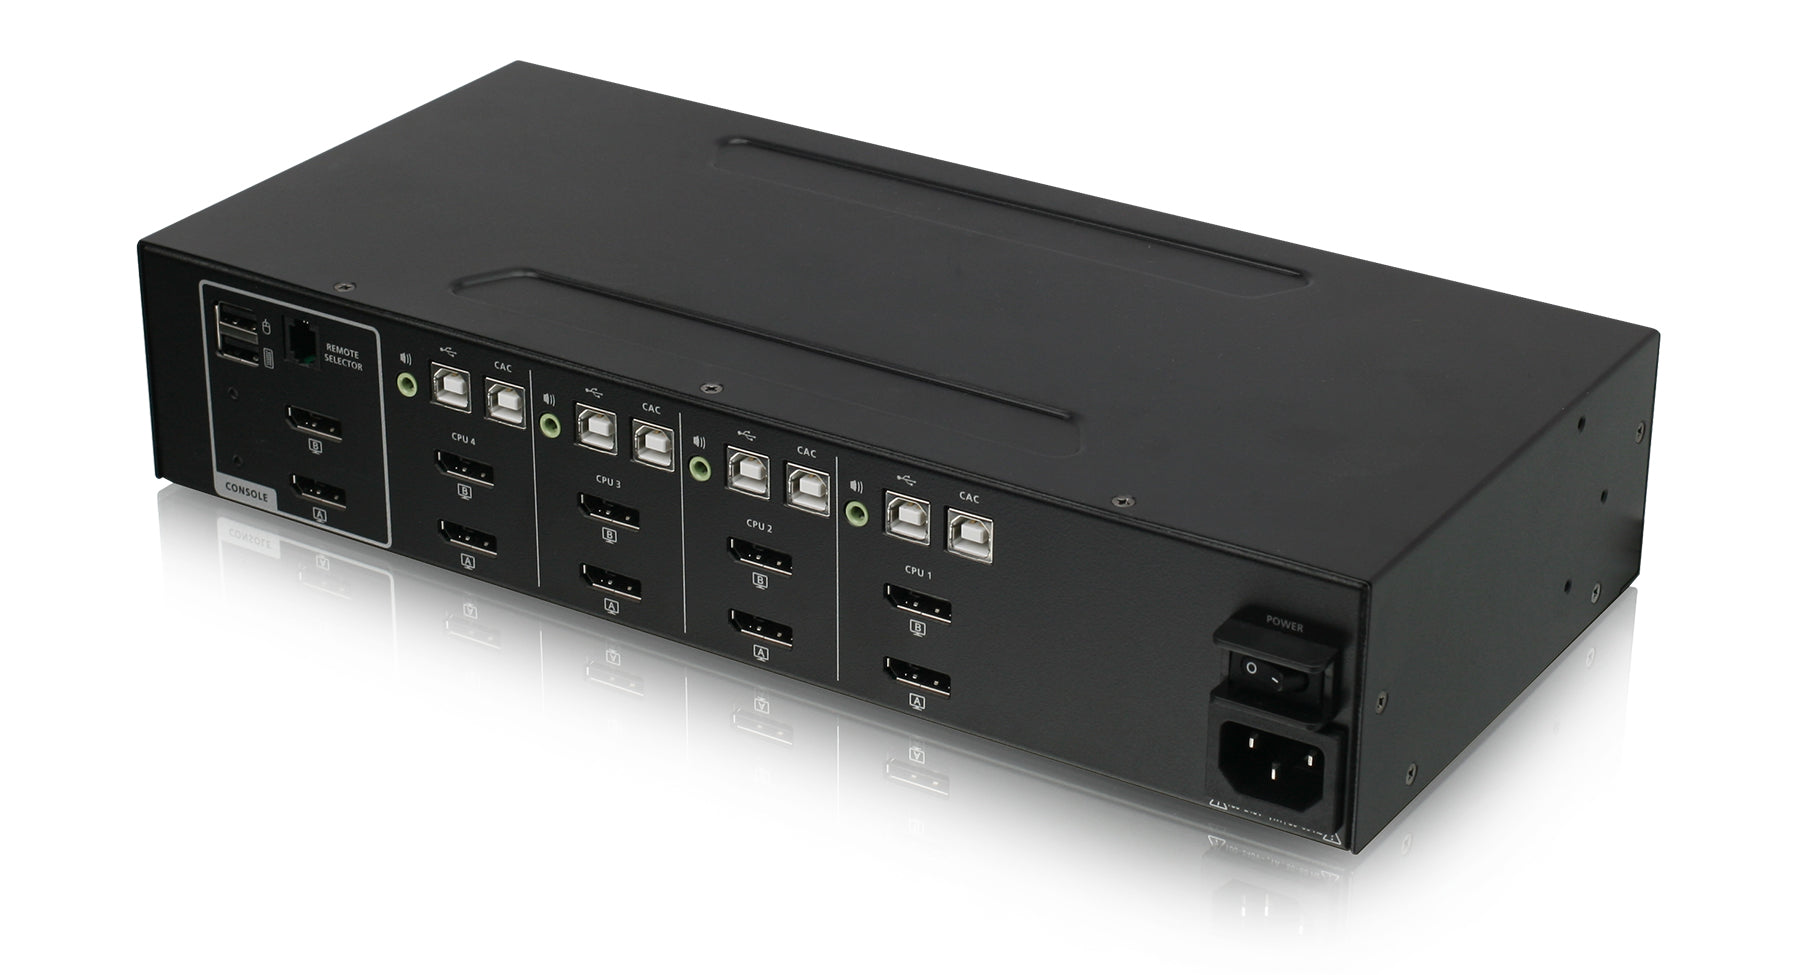 Universal 4-Port Dual View DisplayPort/HDMI Secure KVM Switch Kit w/Audio